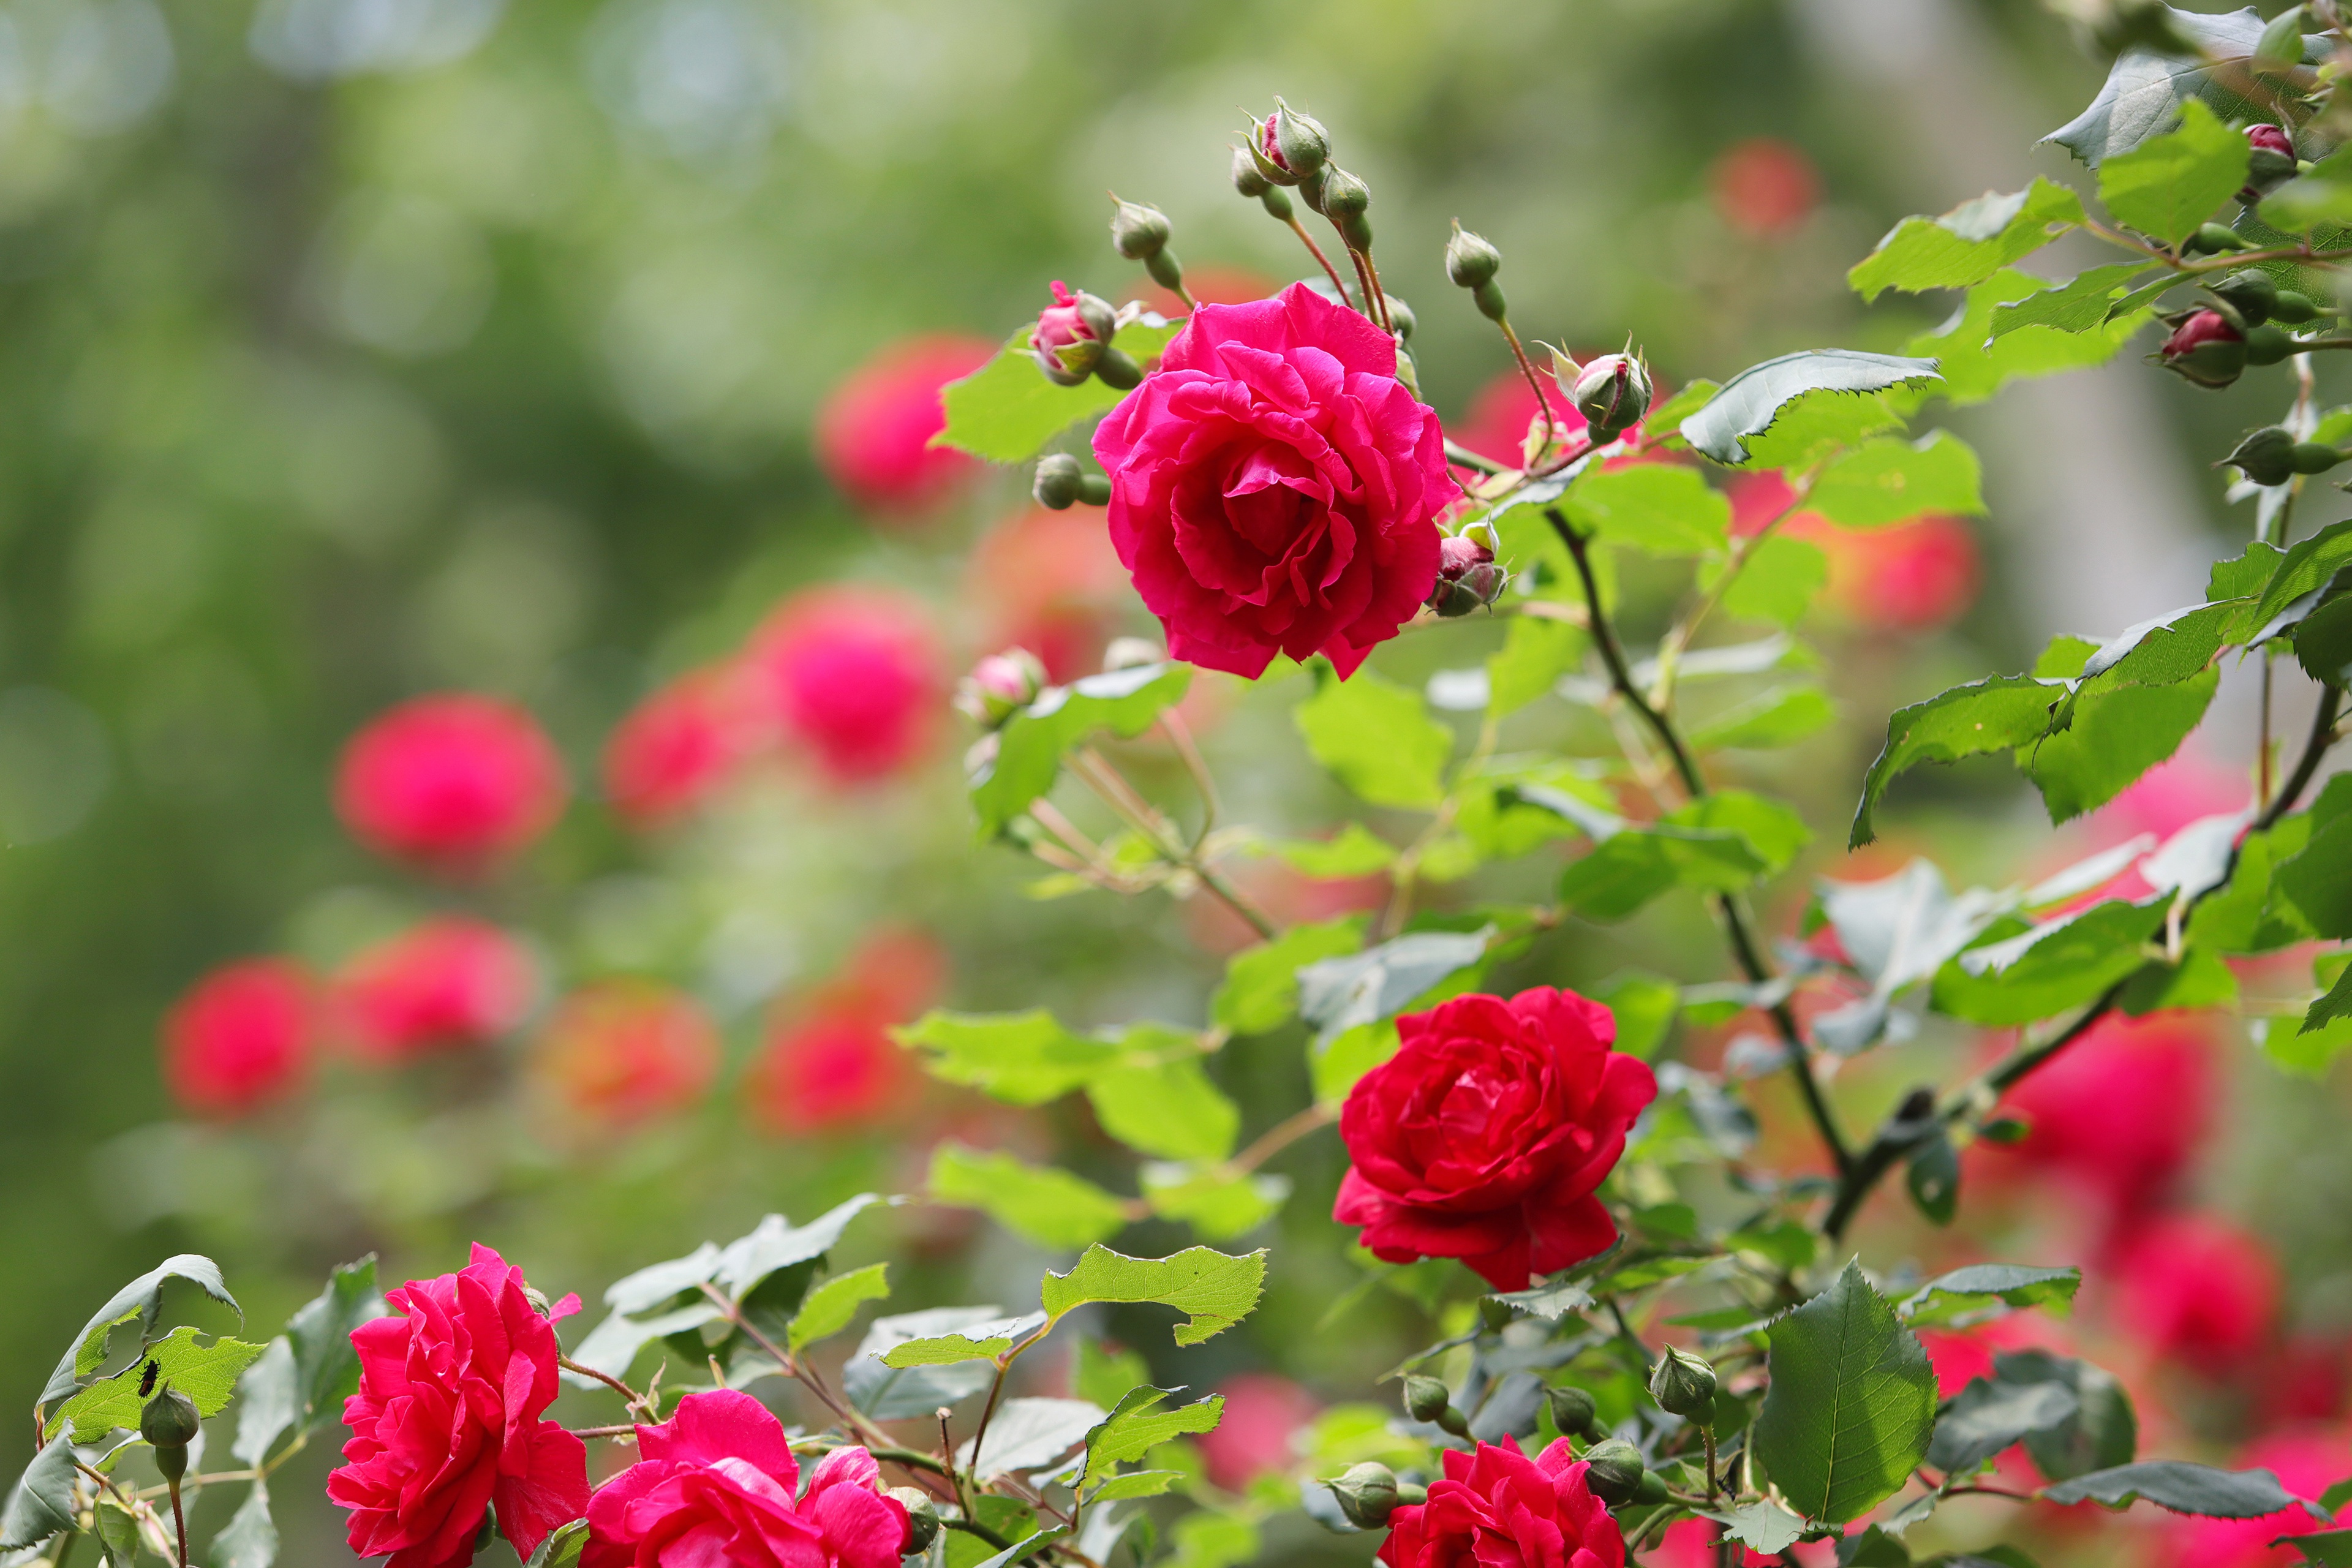 Скачать обои бесплатно Роза, Куст, Красная Роза, Красный Цветок, Земля/природа, Розовый Куст картинка на рабочий стол ПК